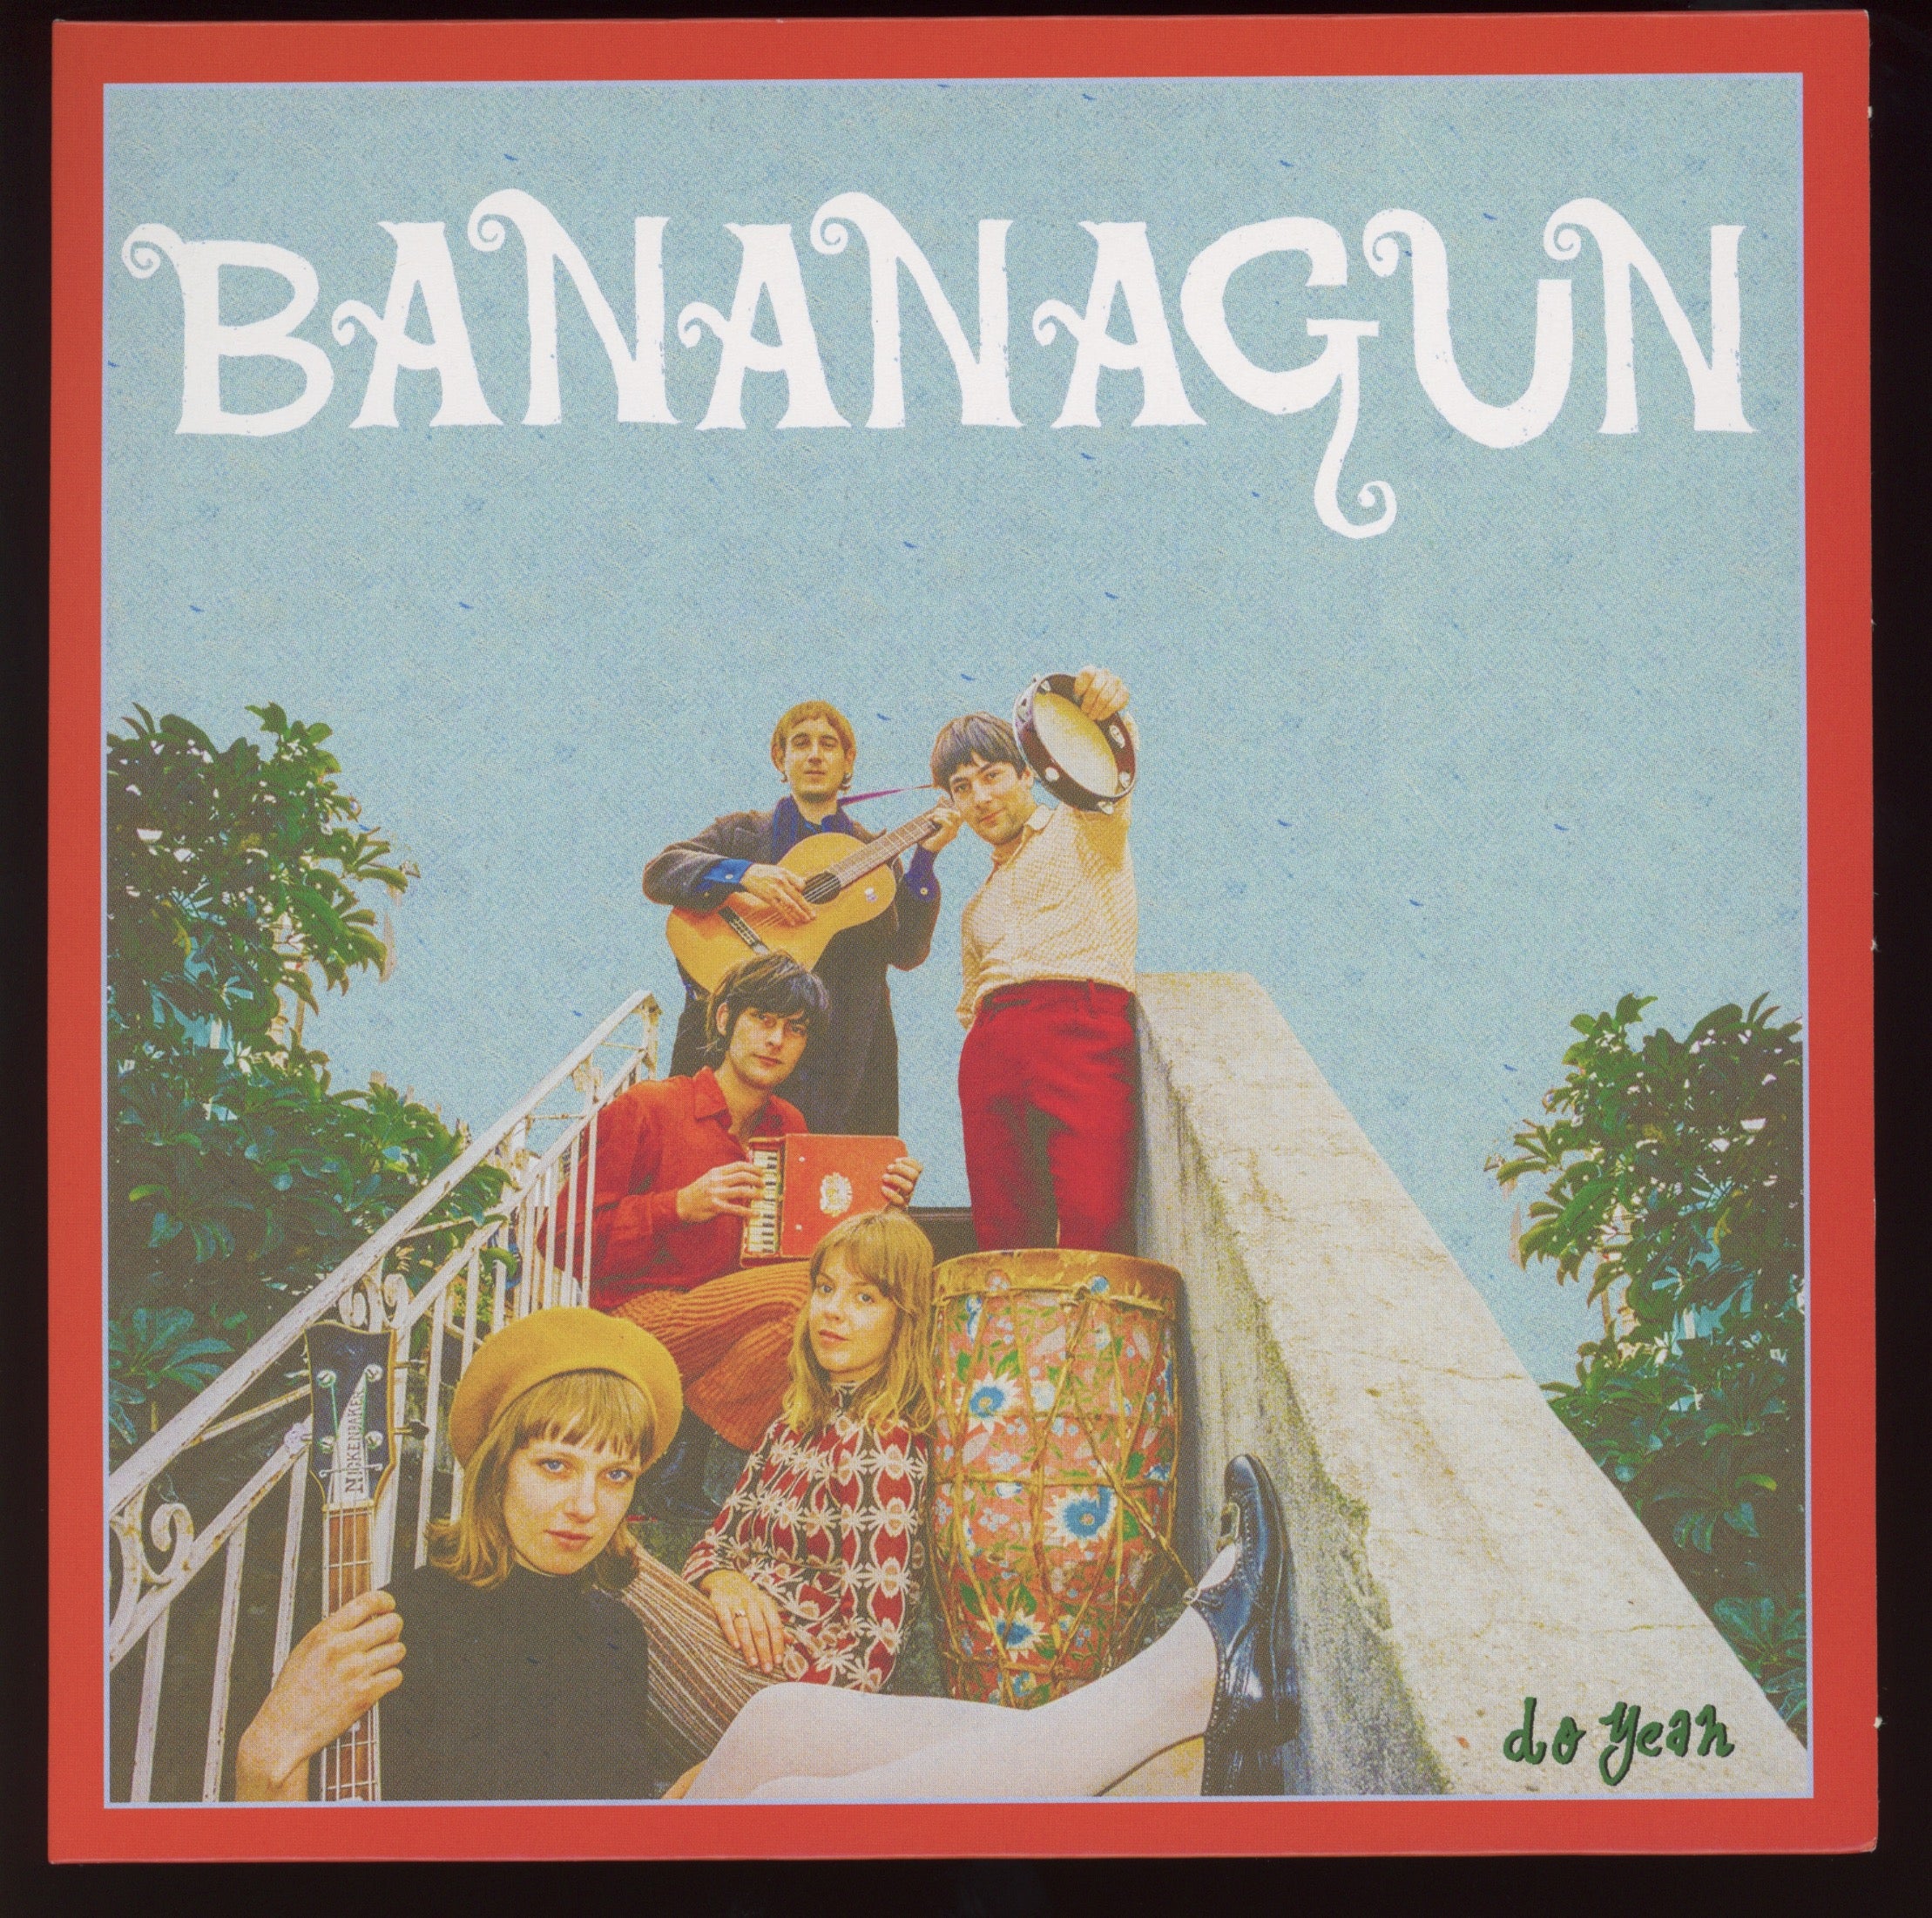 Bananagun - Do Yeah on Full Time Hobby UK Press